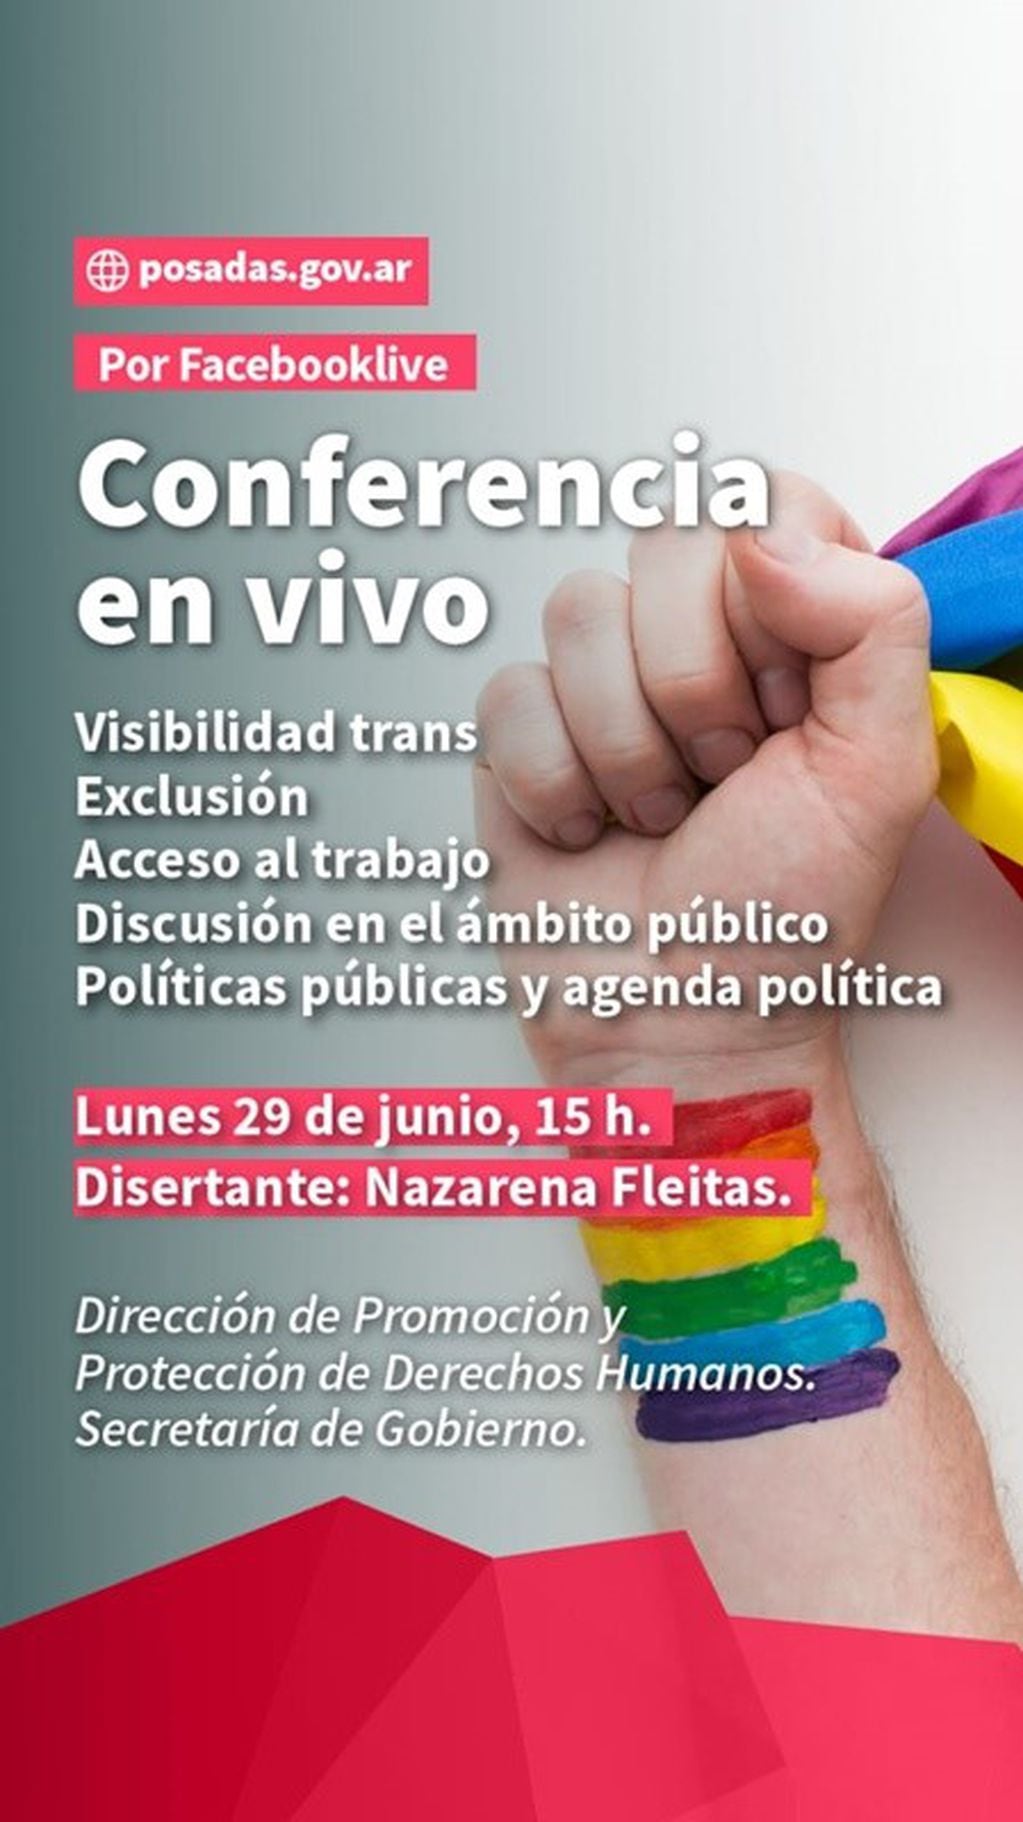 Afiche virtual invitando a la conferencia del lunes sobre la visibilizad trans. (M. de Posadas)